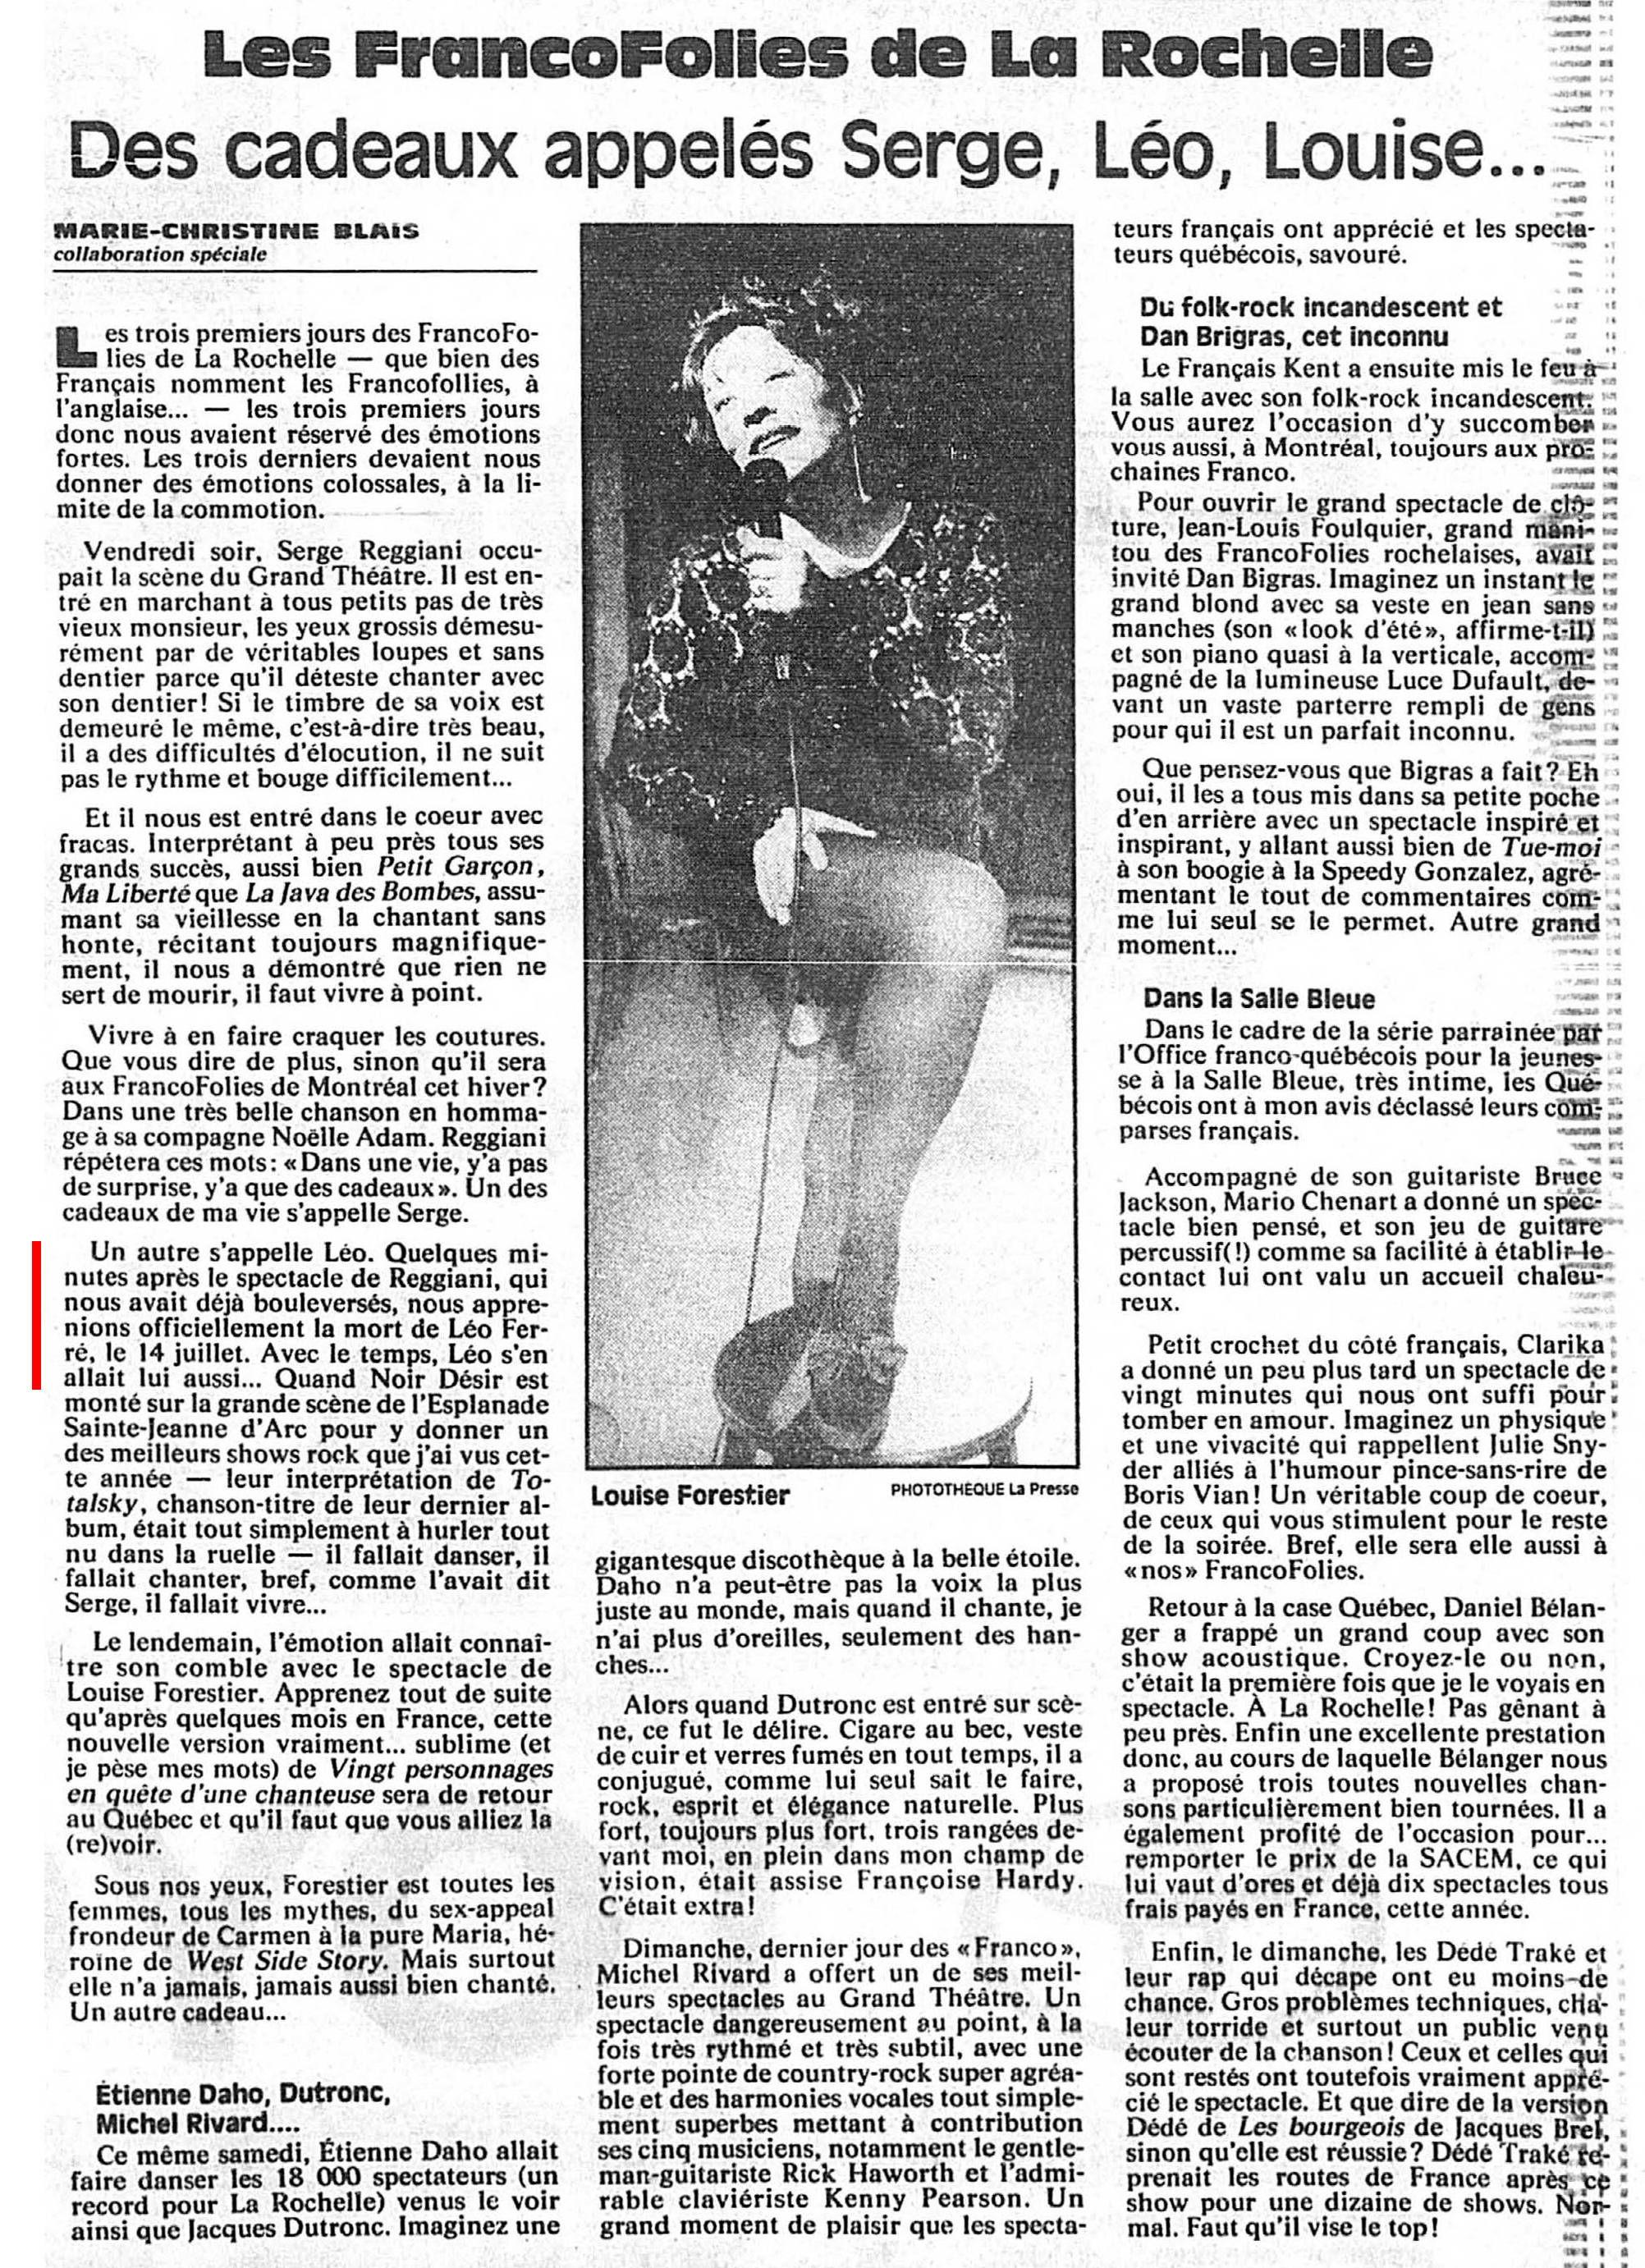 Léo Ferré - La Presse, 20 juillet 1993, Cahier A